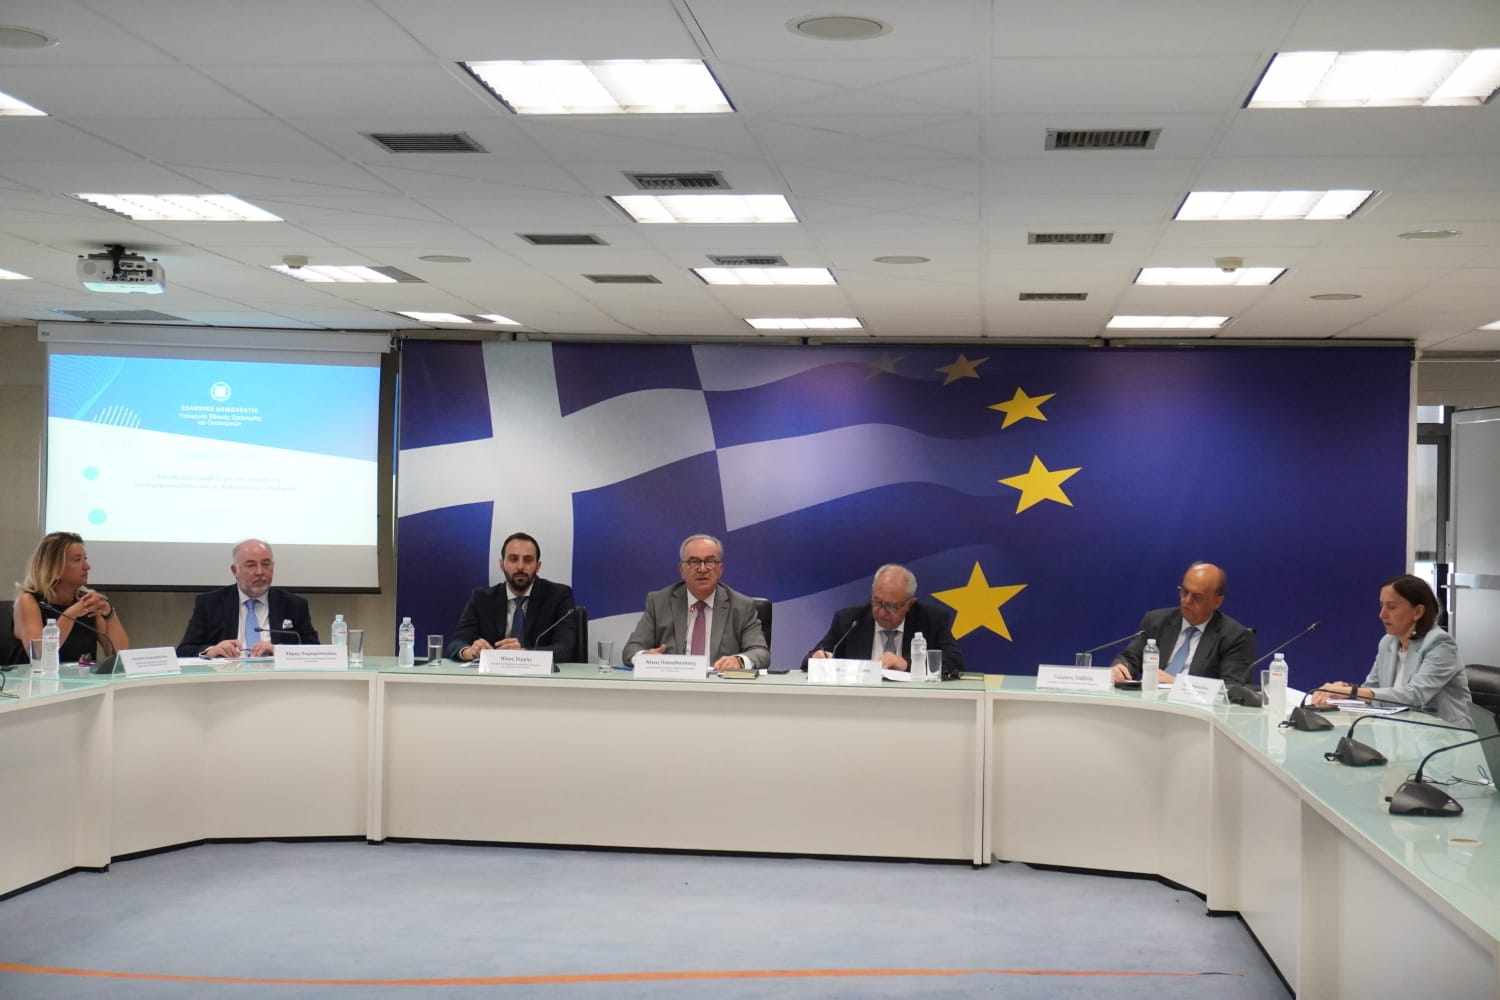 Ο πρόεδρος της ΕΑΤΕ, Χάρης Λαμπρόπουλος και η διευθύνουσα σύμβουλος της ΕΑΤΕ, Αντιγόνη Λυμπεροπούλου@Poowergame.gr